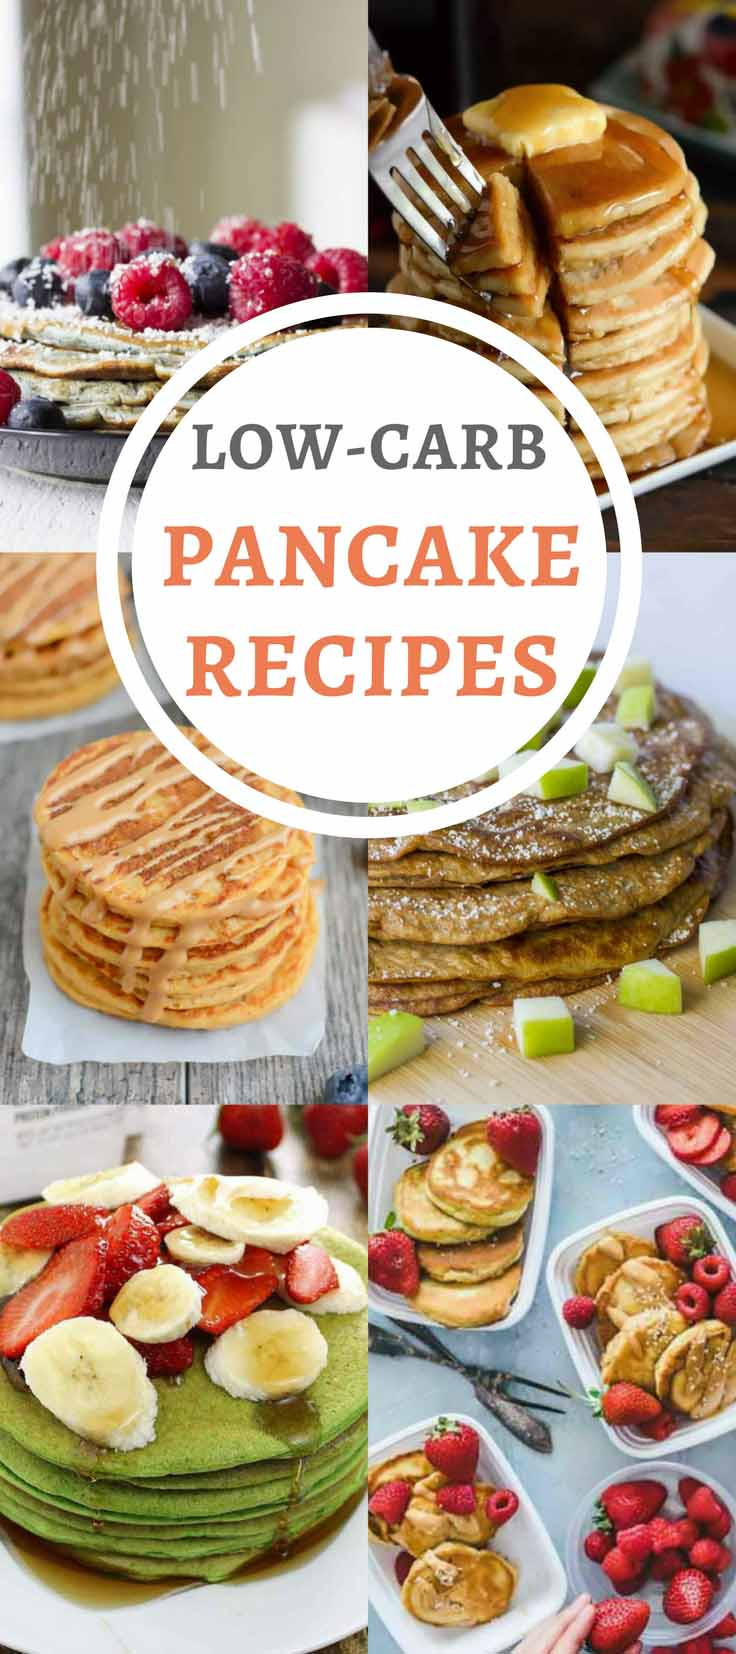 Diabetic Pancake Recipes
 7 Diabetes Friendly Pancake Recipes Low Carb